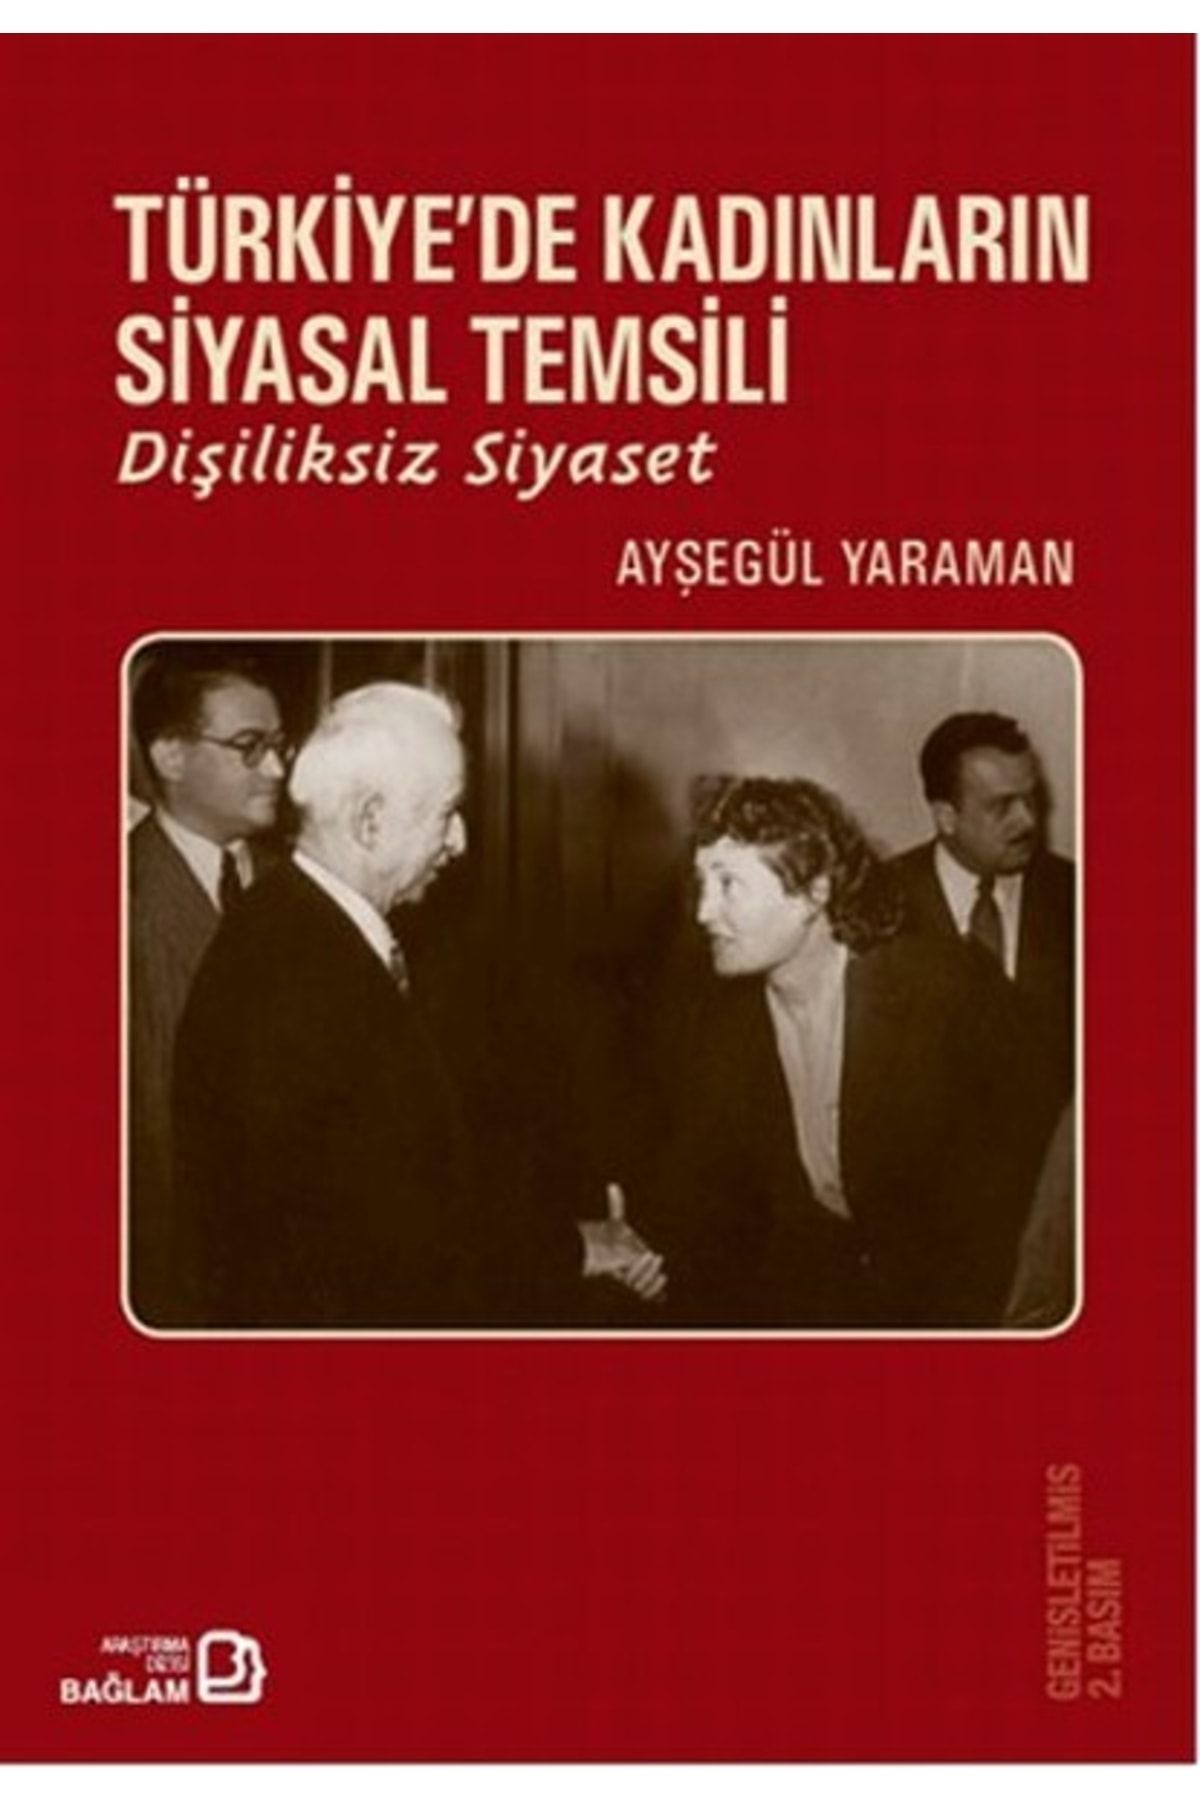 Bağlam Yayıncılık Türkiye'de Kadınların Siyasal Temsili